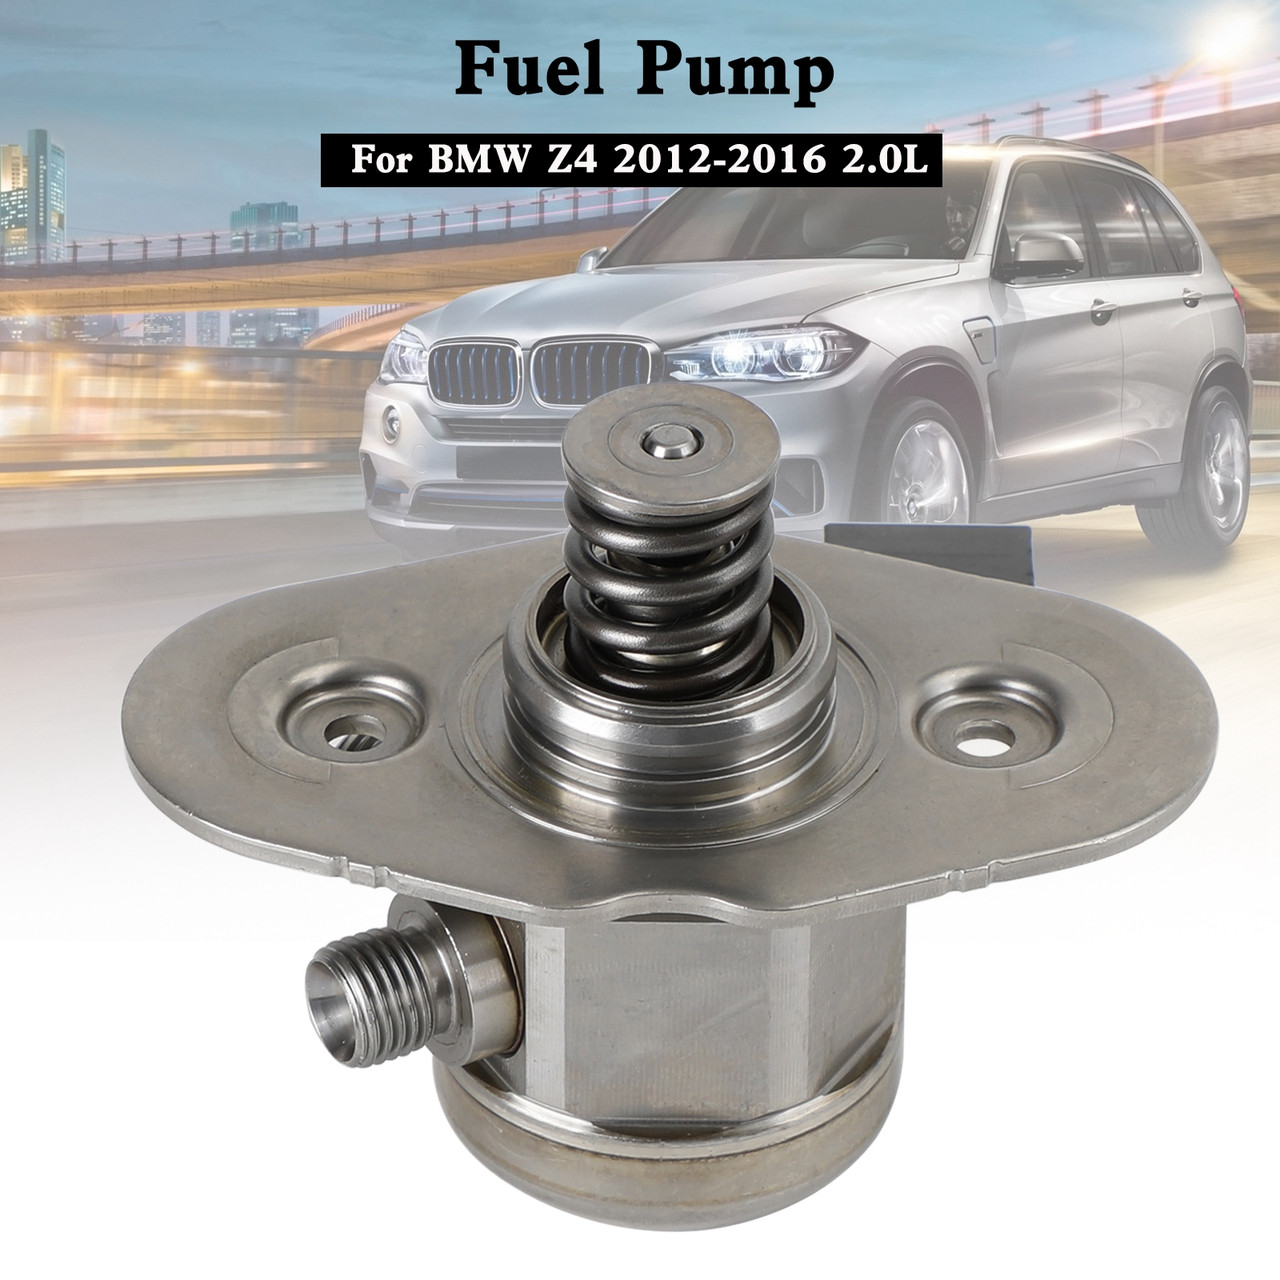 High Pressure Fuel Pump 13517584461 Fit BMW 528i 328i 2012 13 14 15 L4 2.0L